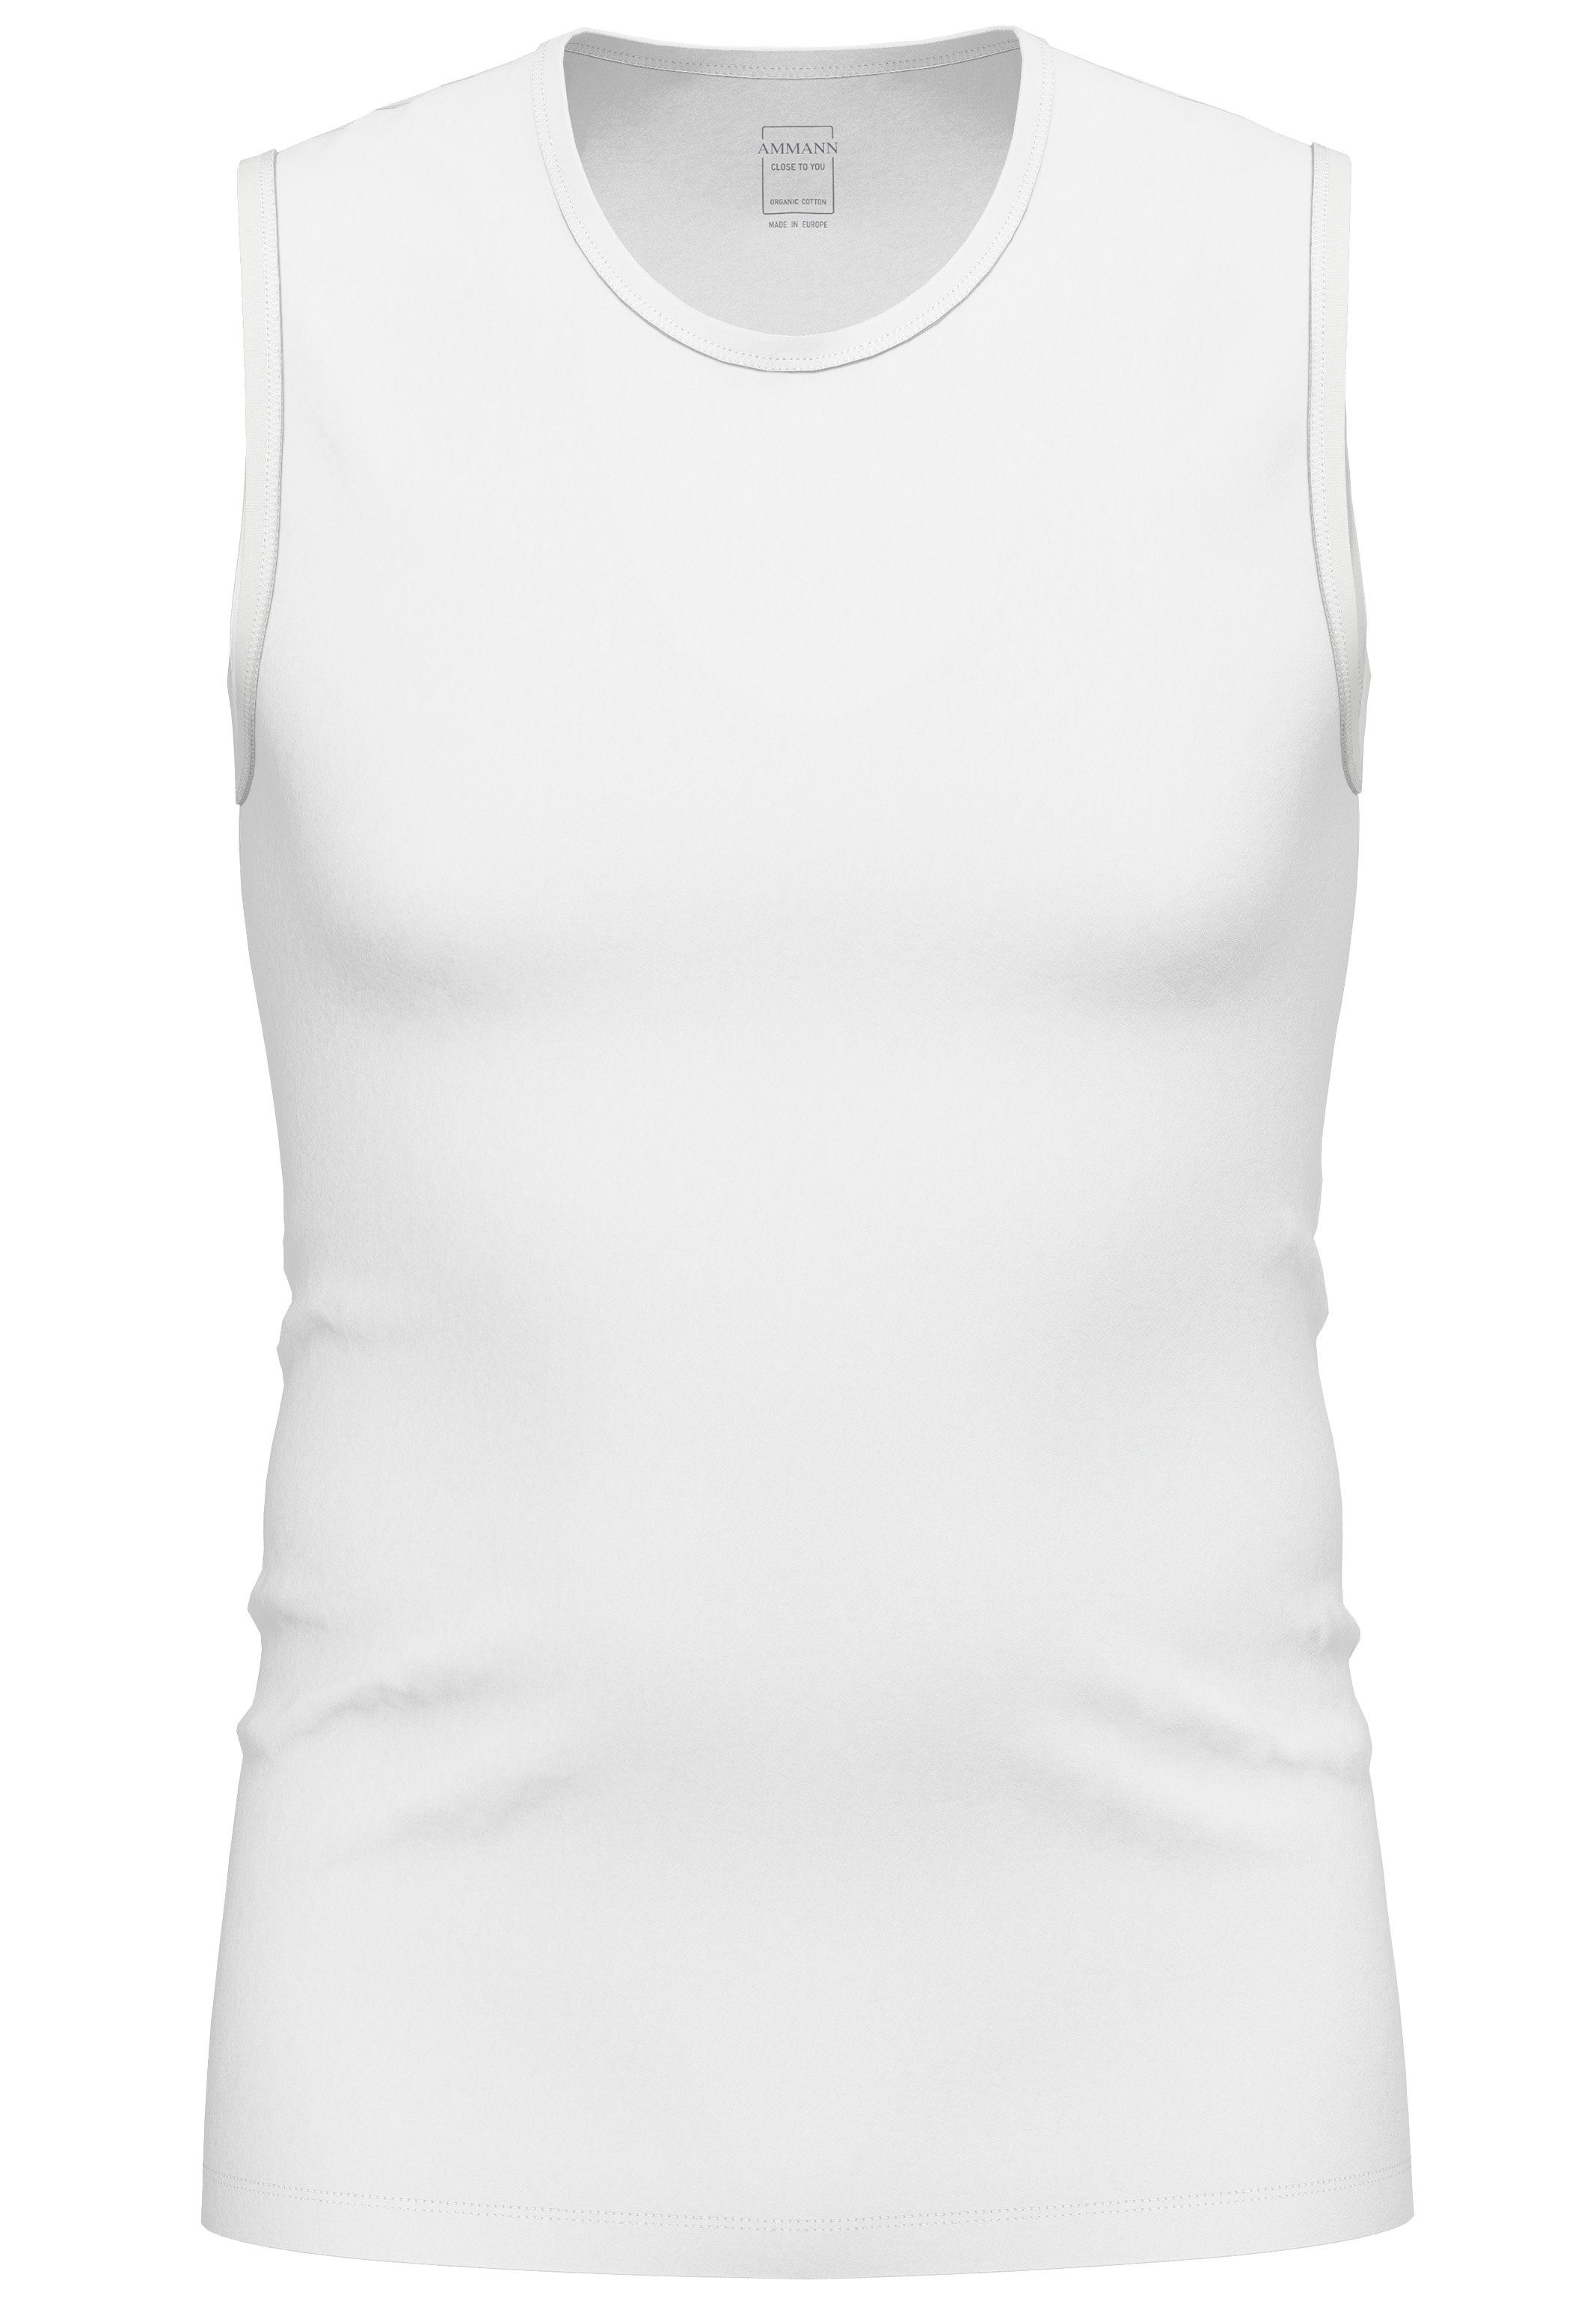 Beschränkt auf direkt verwaltete Filialen Ammann Unterhemd you Atmungsaktiv Baumwolle Material / Close Elastisches to Tanktop Weiß Unterhemd - (1-St) - 